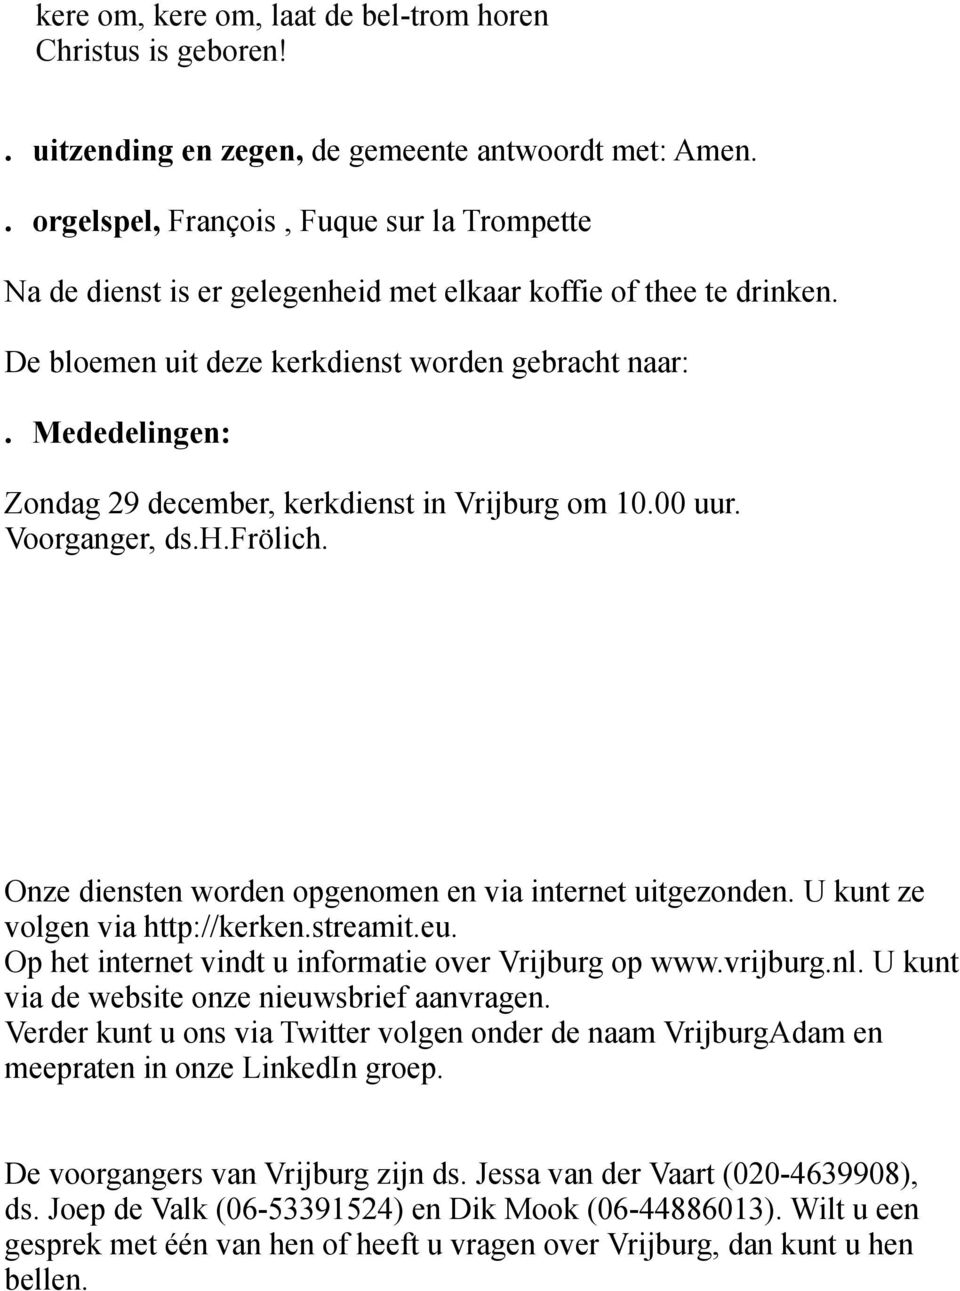 Mededelingen: Zondag 29 december, kerkdienst in Vrijburg om 10.00 uur. Voorganger, ds.h.frölich. Onze diensten worden opgenomen en via internet uitgezonden. U kunt ze volgen via http://kerken.